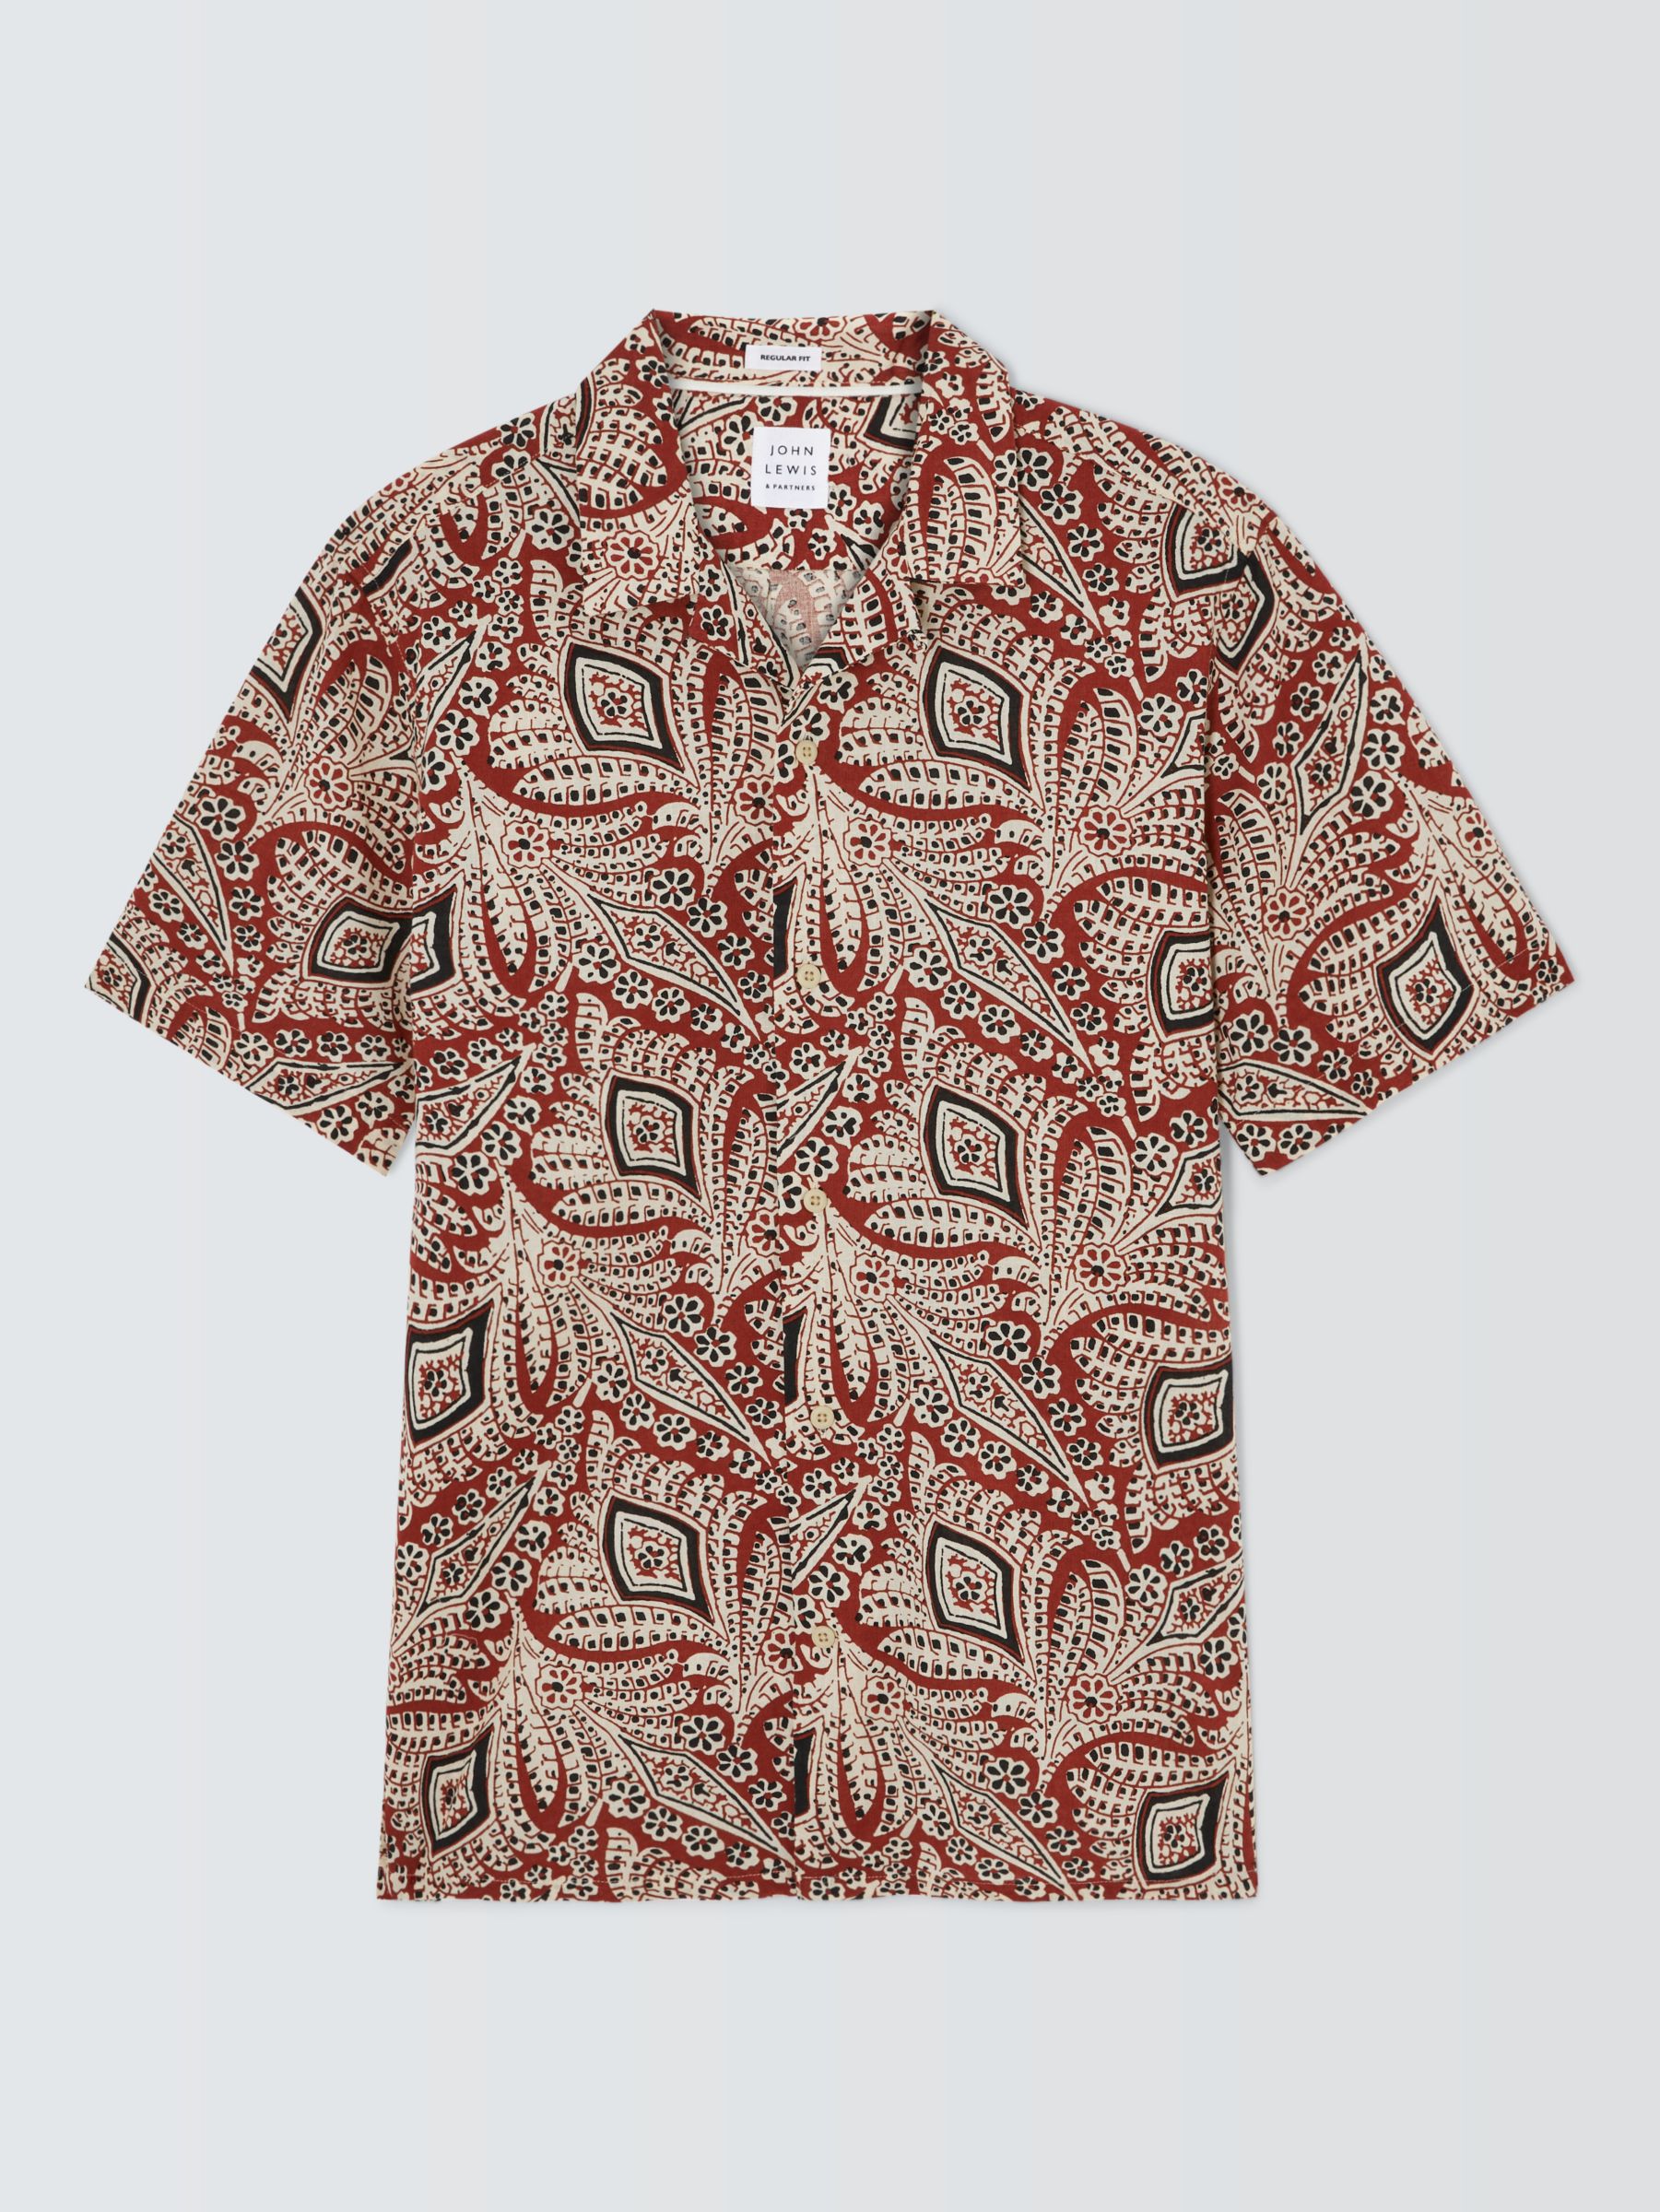 John Lewis Paisley Print Short Sleeve Shirt, Spice, XL